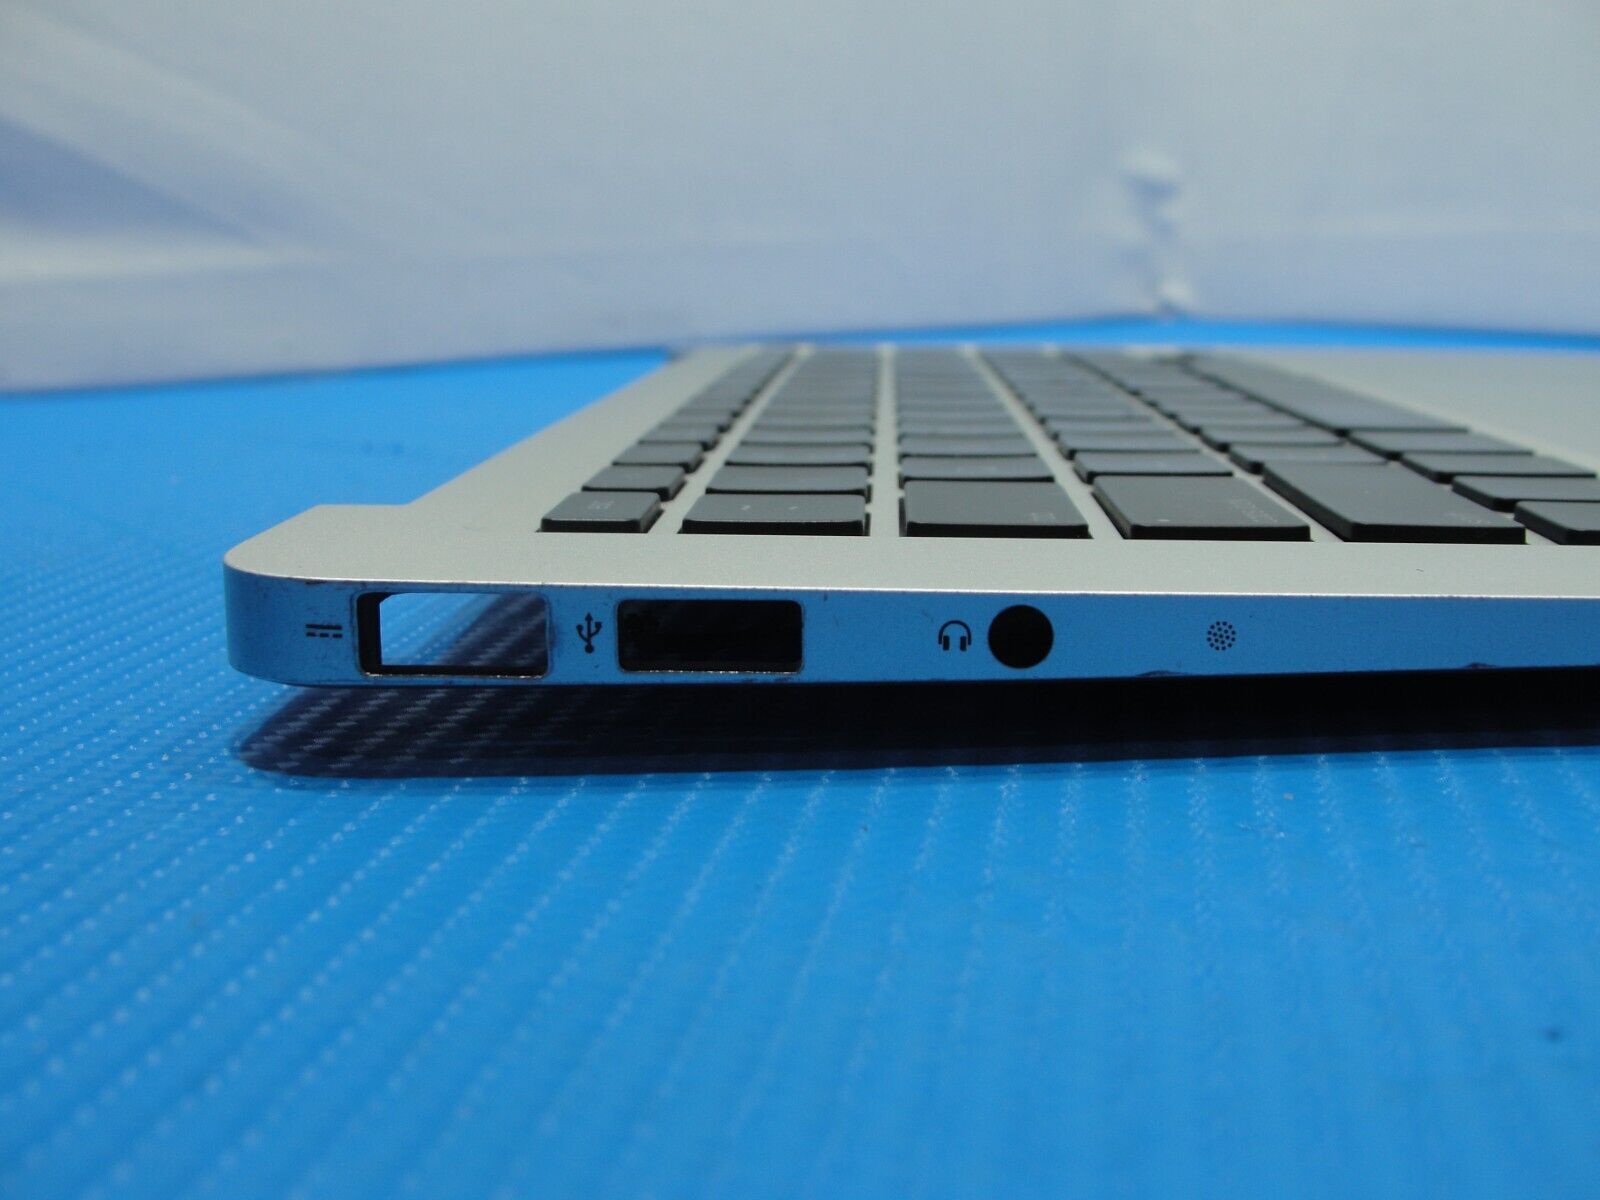 MacBook Air A1369 MC504LL/A Late 2010 13